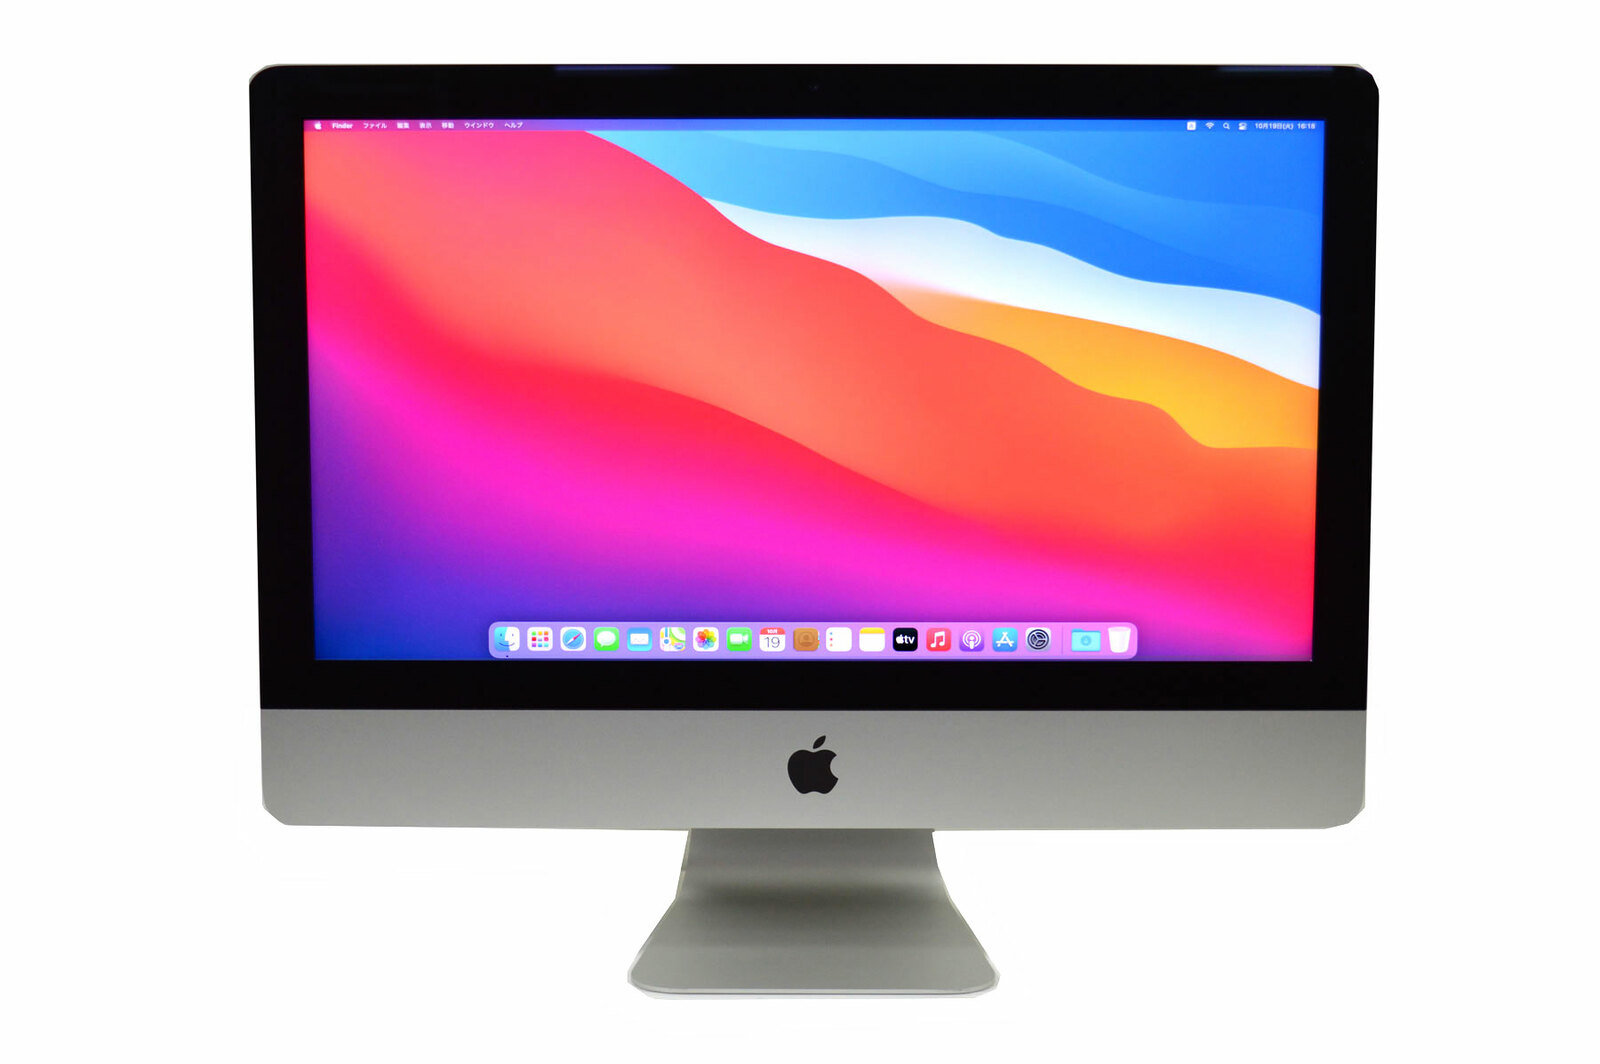 【中古】 デスクトップパソコン 中古 パソコン Apple アップル iMac SSD 搭載 OS Big Sur A1418 2017年製  Retina 4K 液晶 21.5インチ 第7世代 Core i5 3.0G メモリ 8G SSD 256G Radeon 本体のみ ドライブ非搭載  |